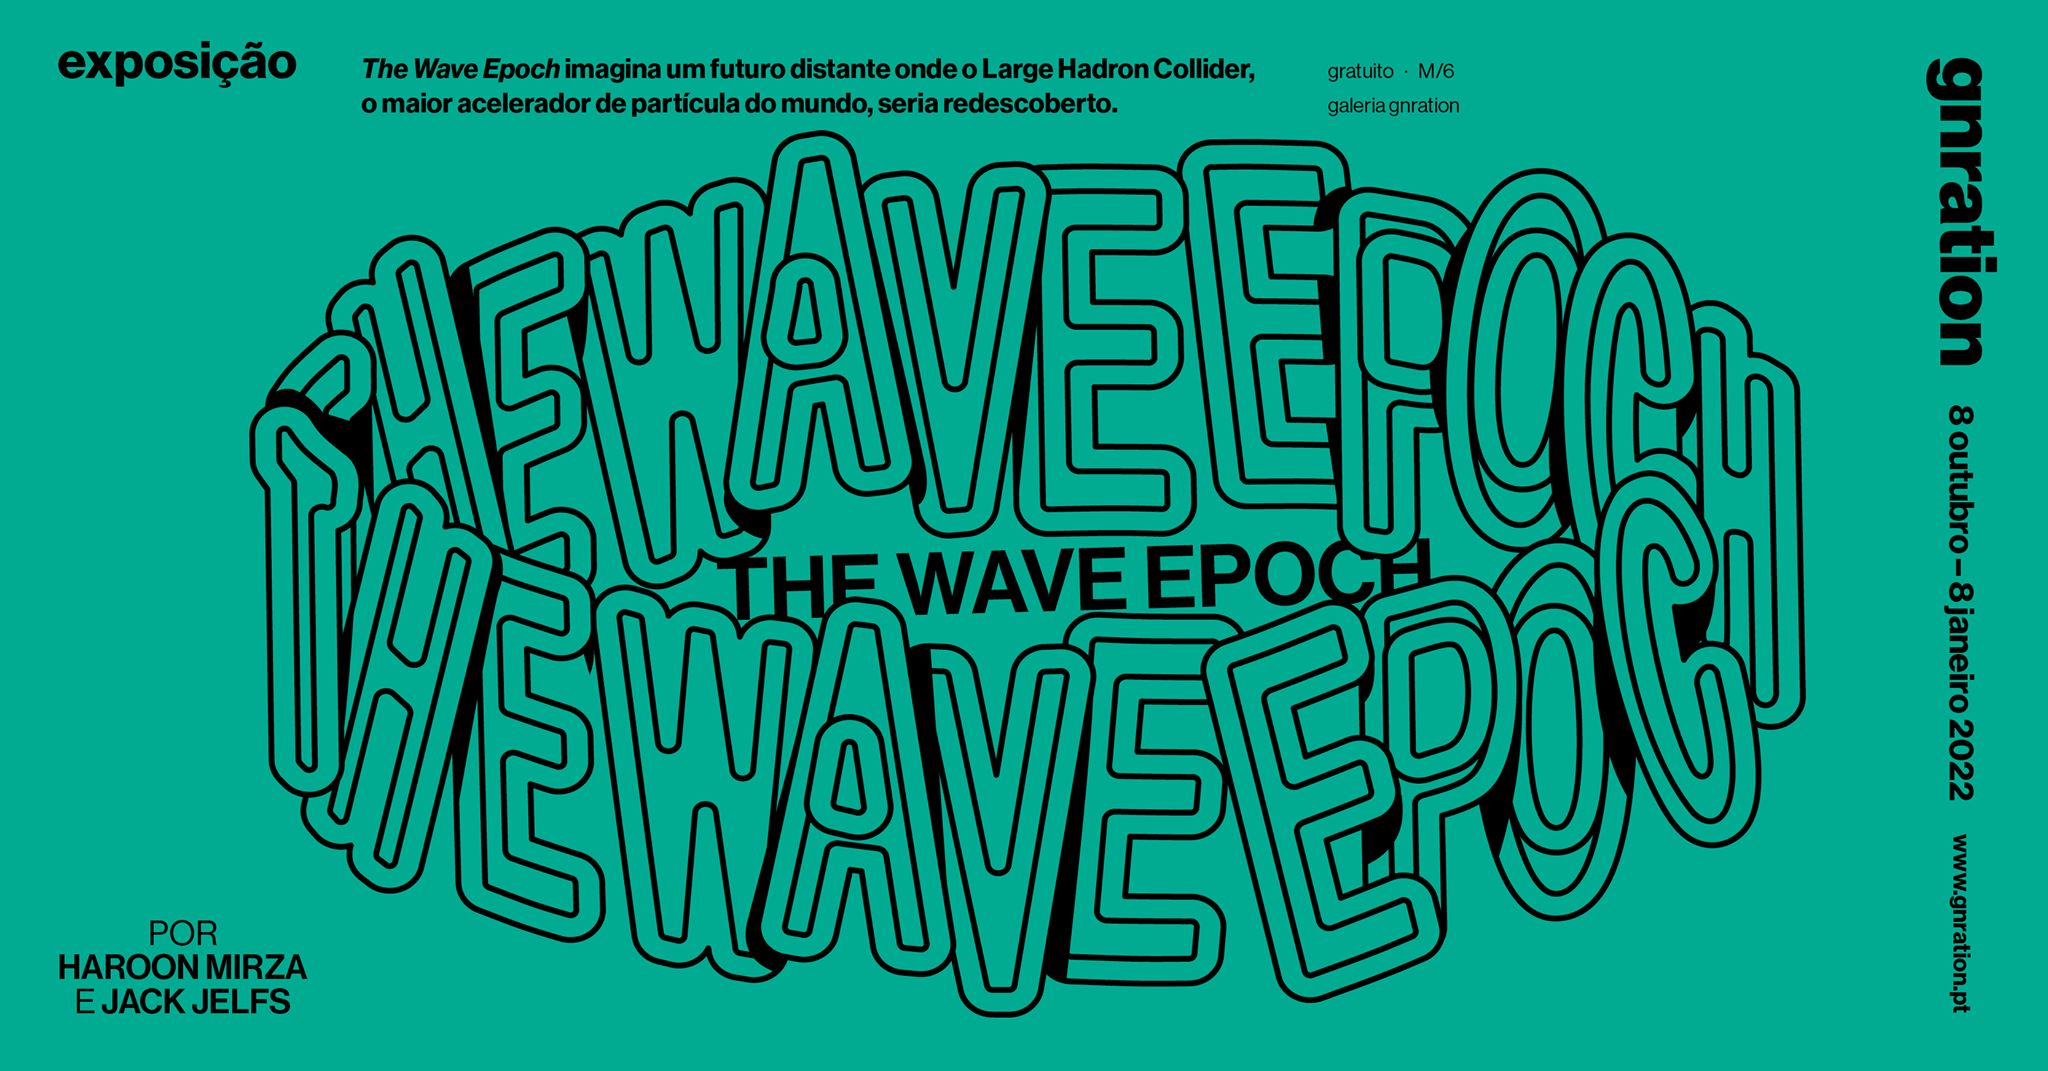 The Wave Epoch, por Haroon Mirza e Jack Jelfs [exposição] | gnration